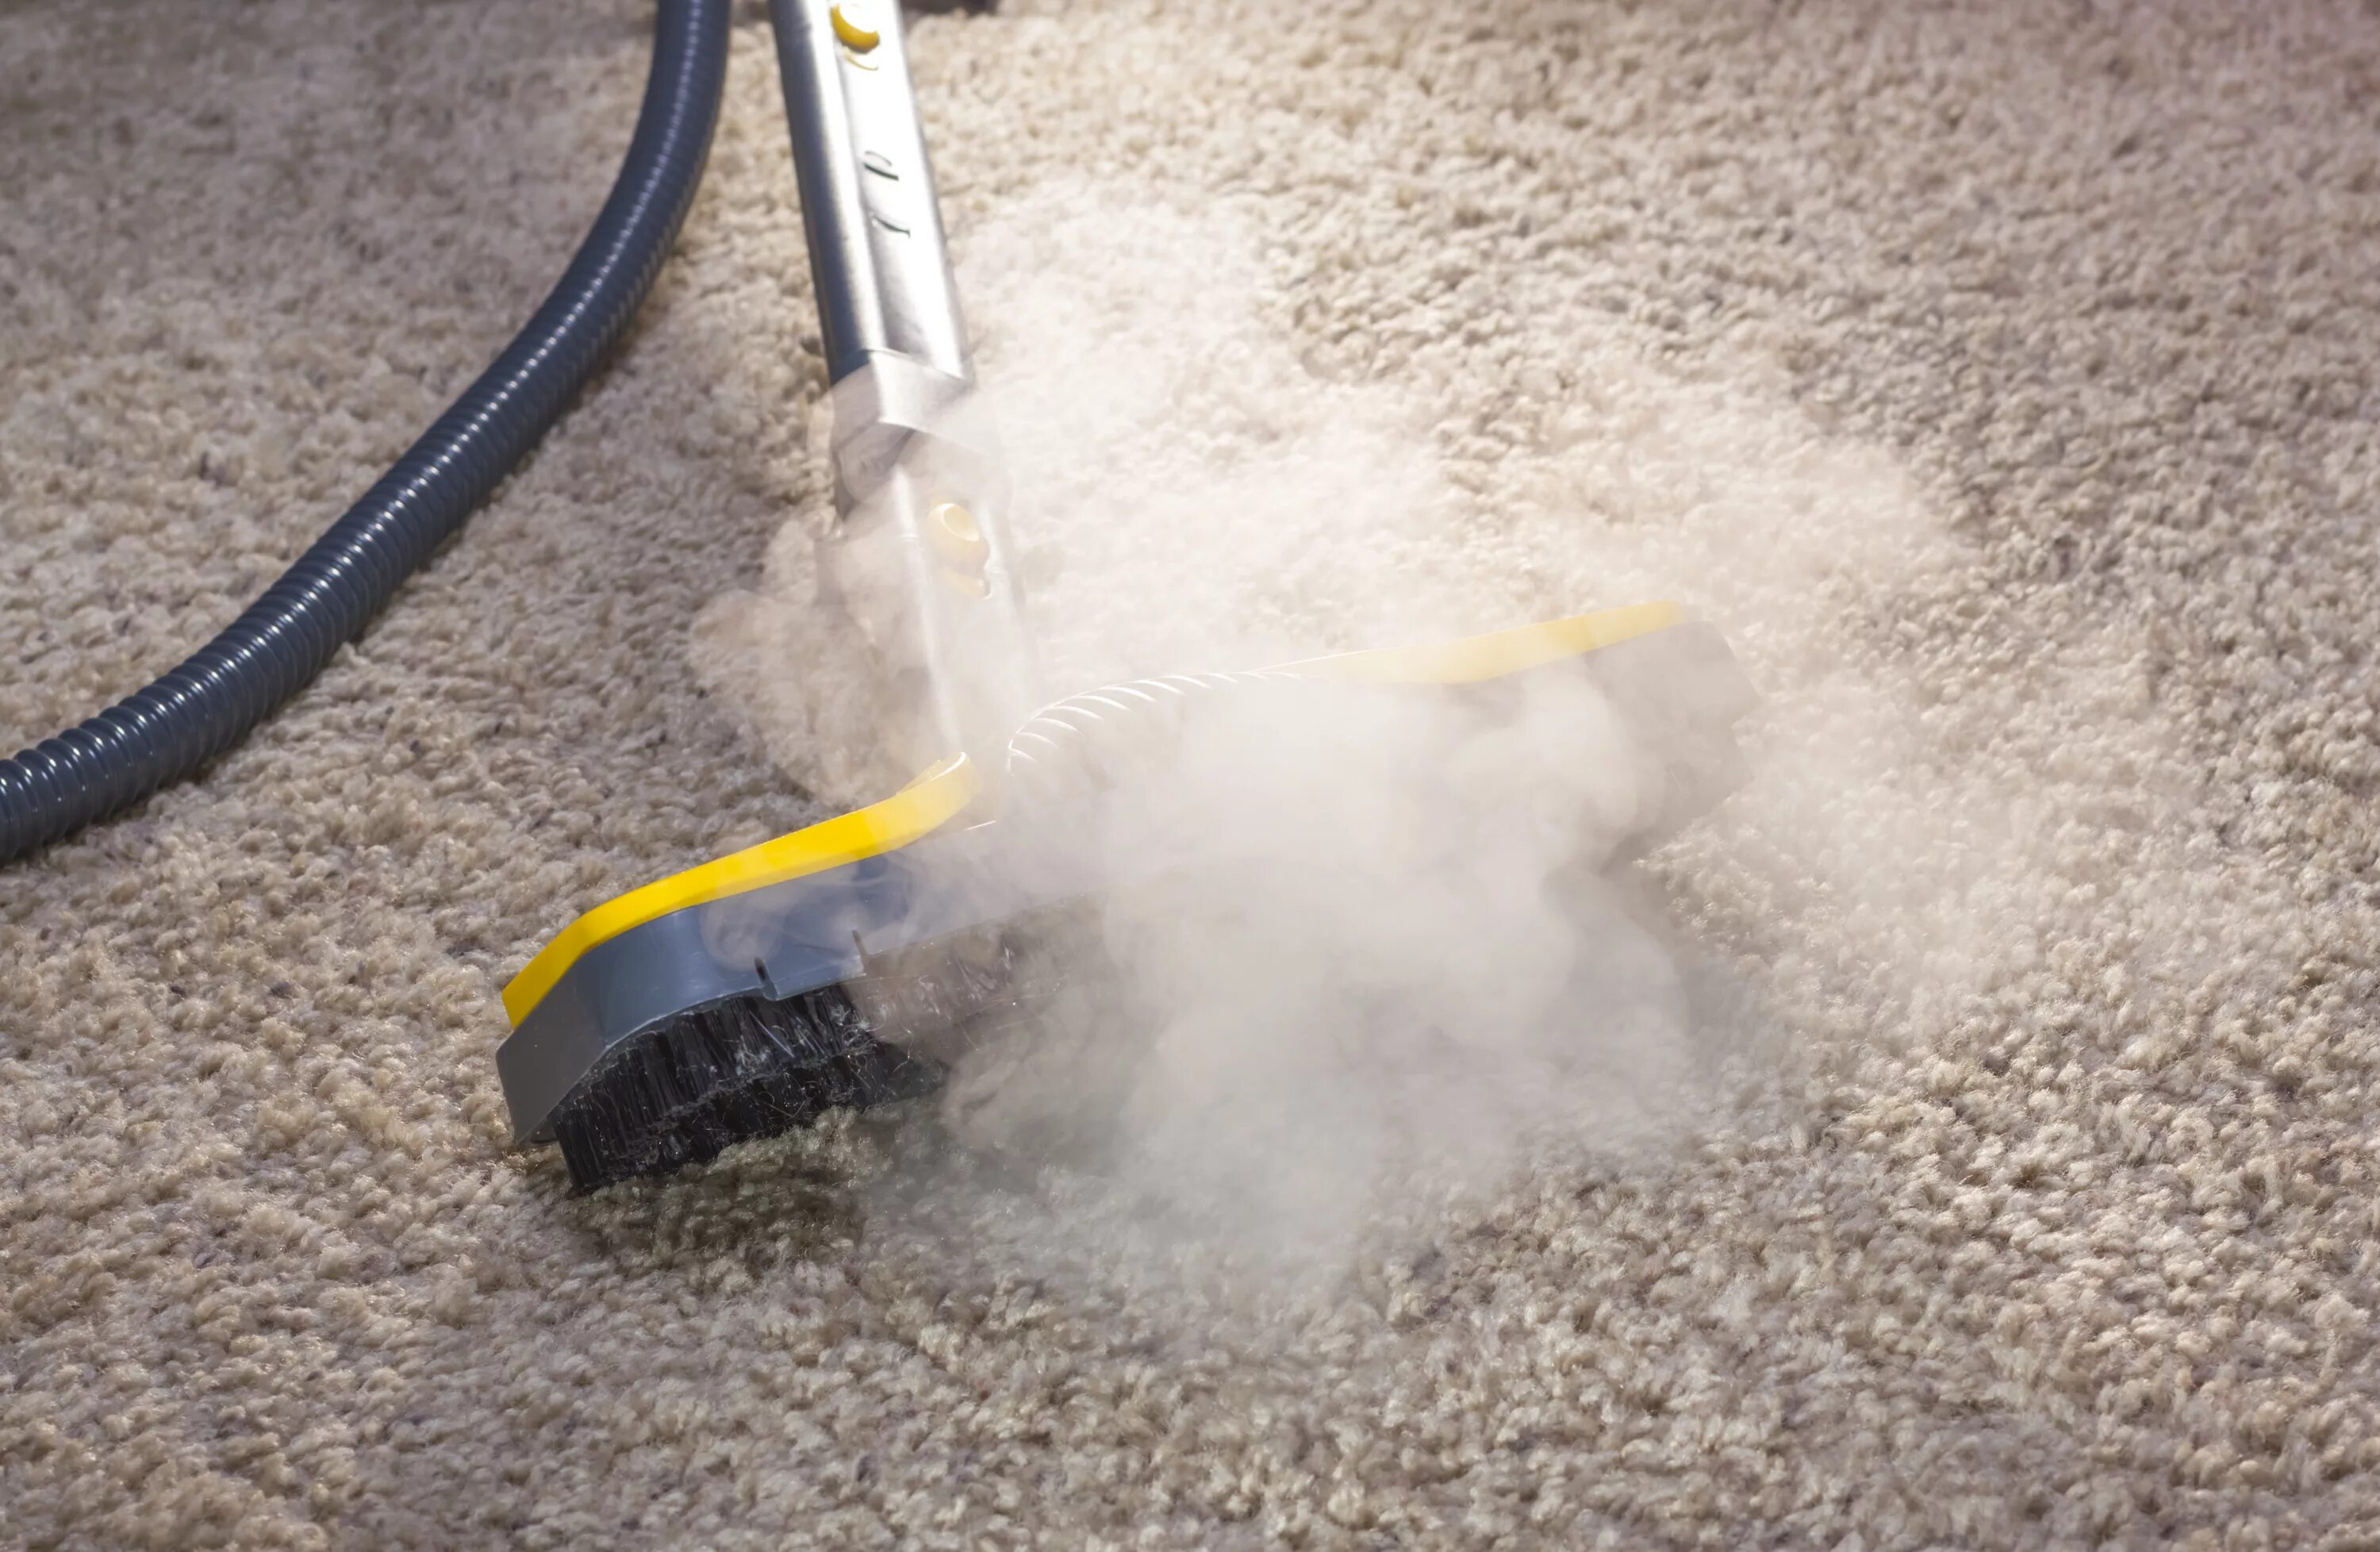 Очистка звука от пыли. Пароочиститель для ковров. Уборка пыли. Чистка ковровых покрытий. Пароочиститель для мебели и ковров.